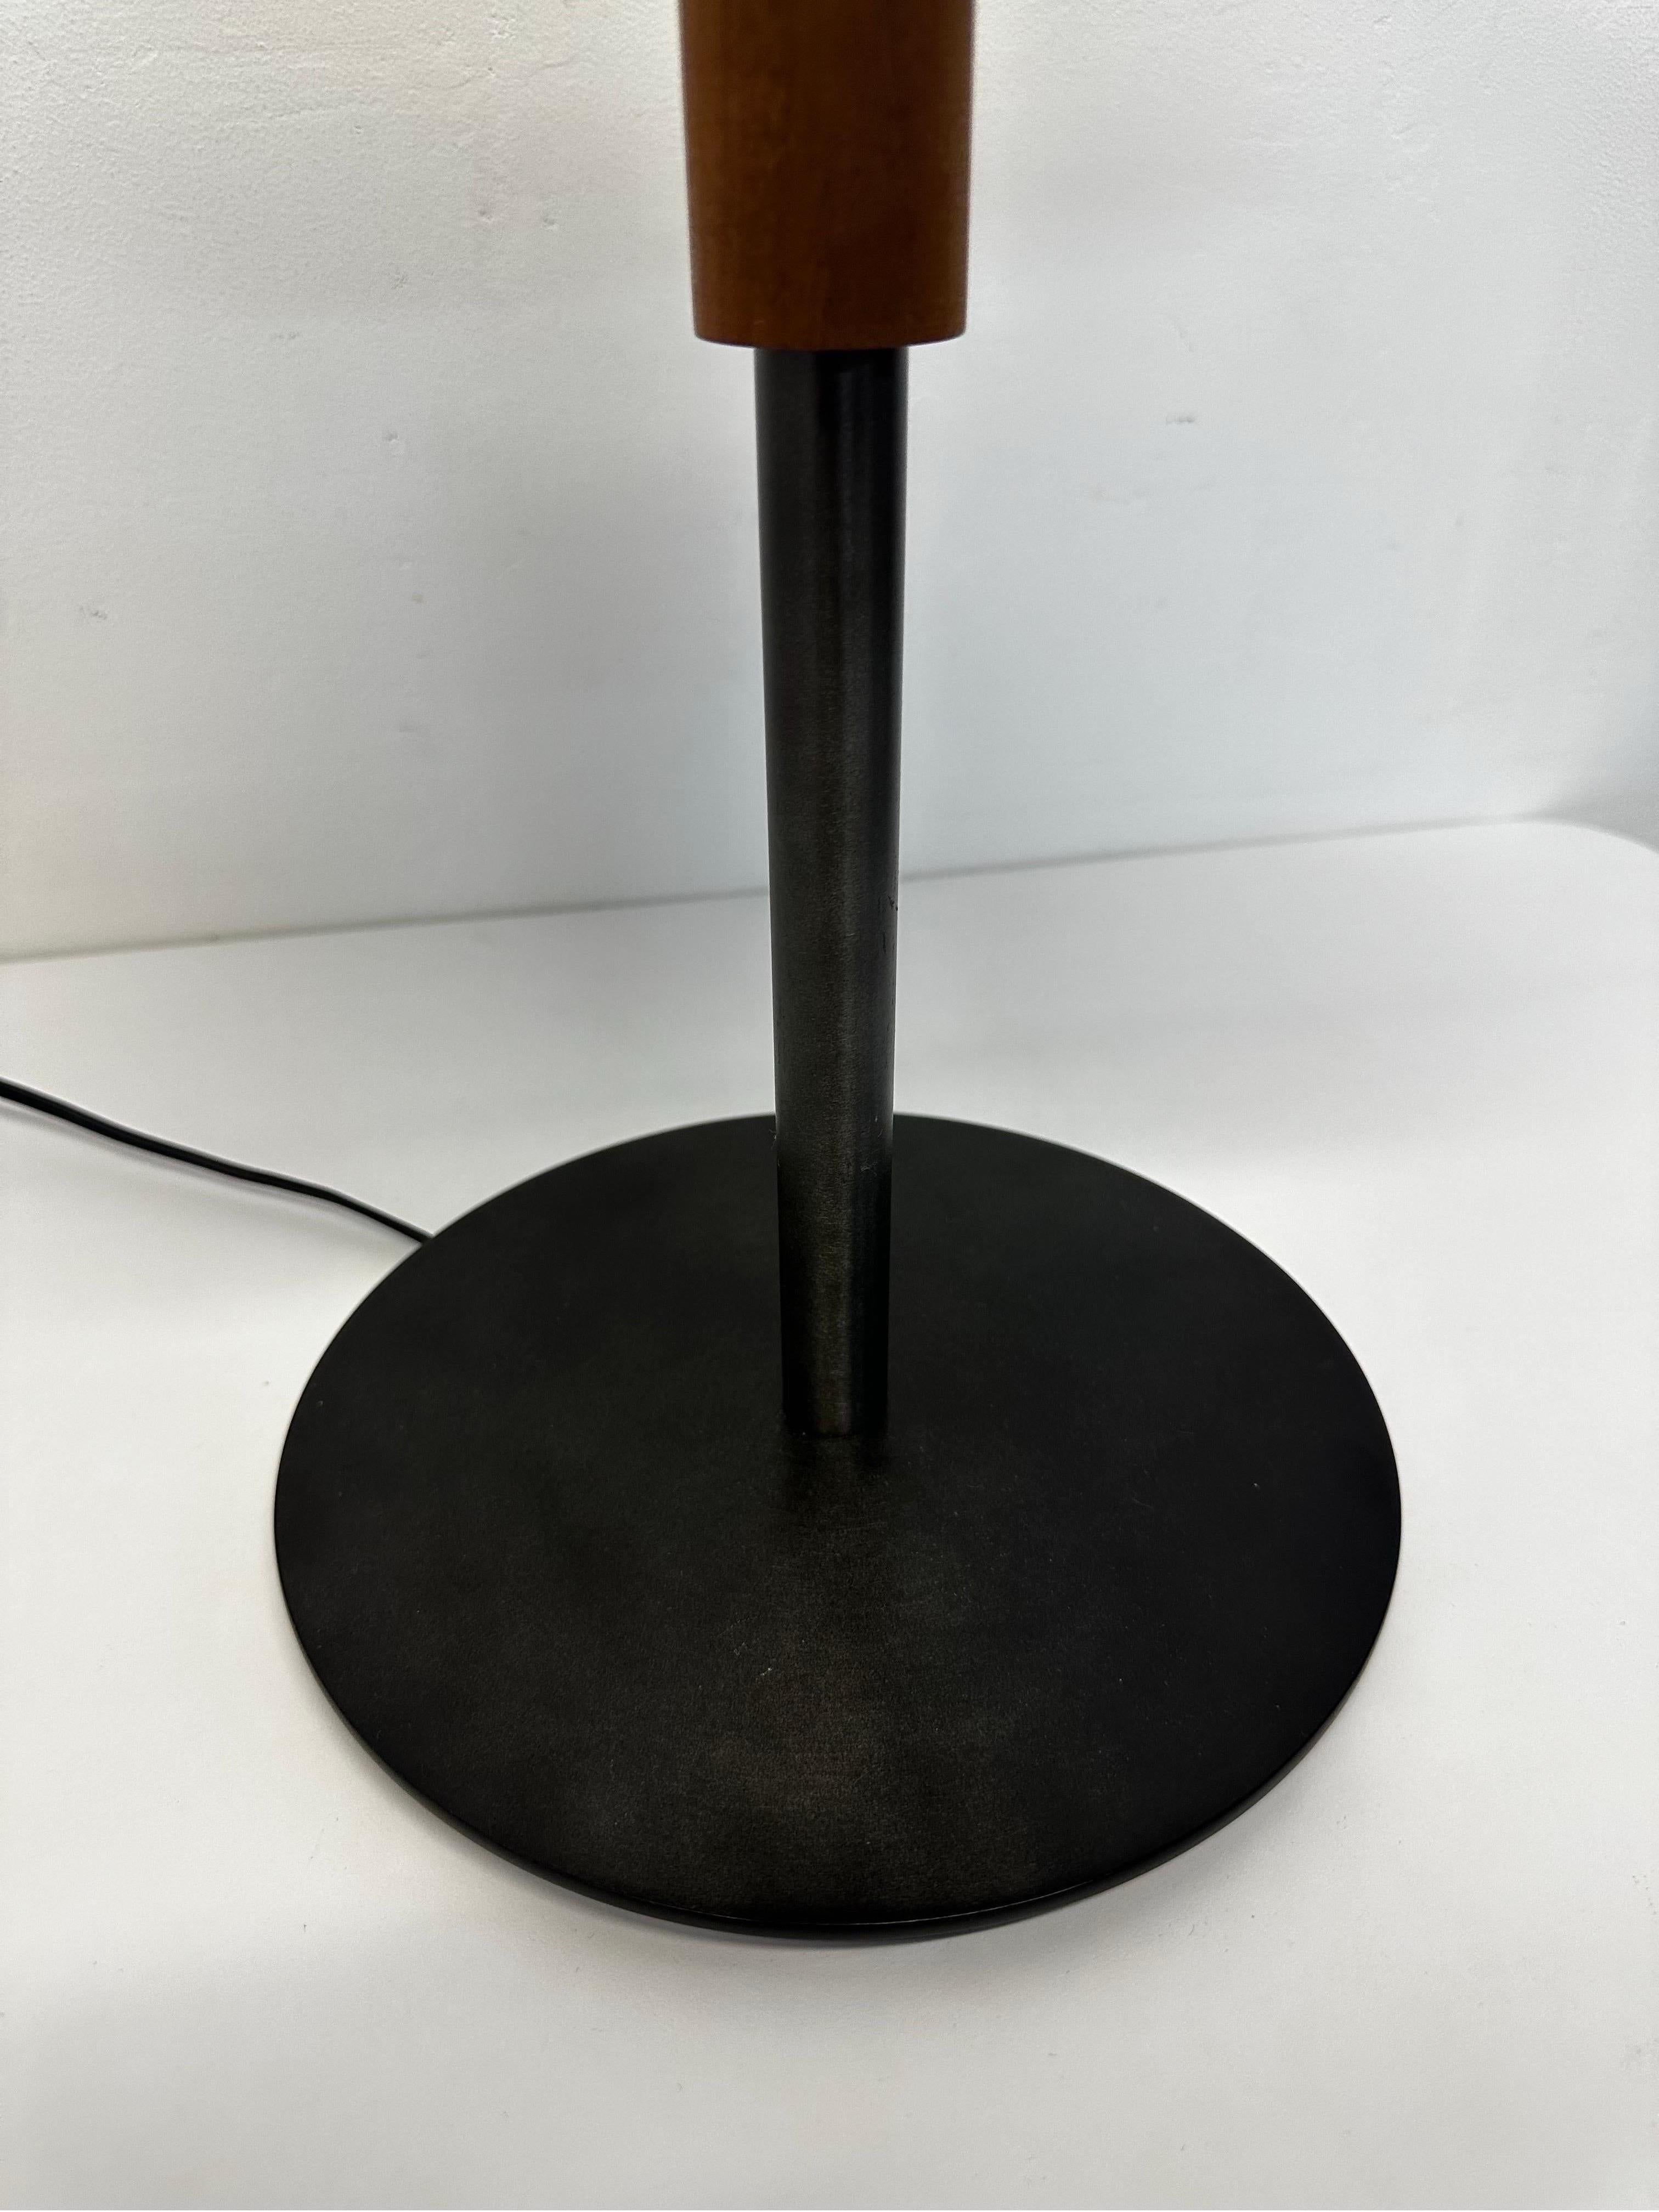 Robert Sonneman Desk or Table Lamp for George Kovacs, 1990 For Sale 3